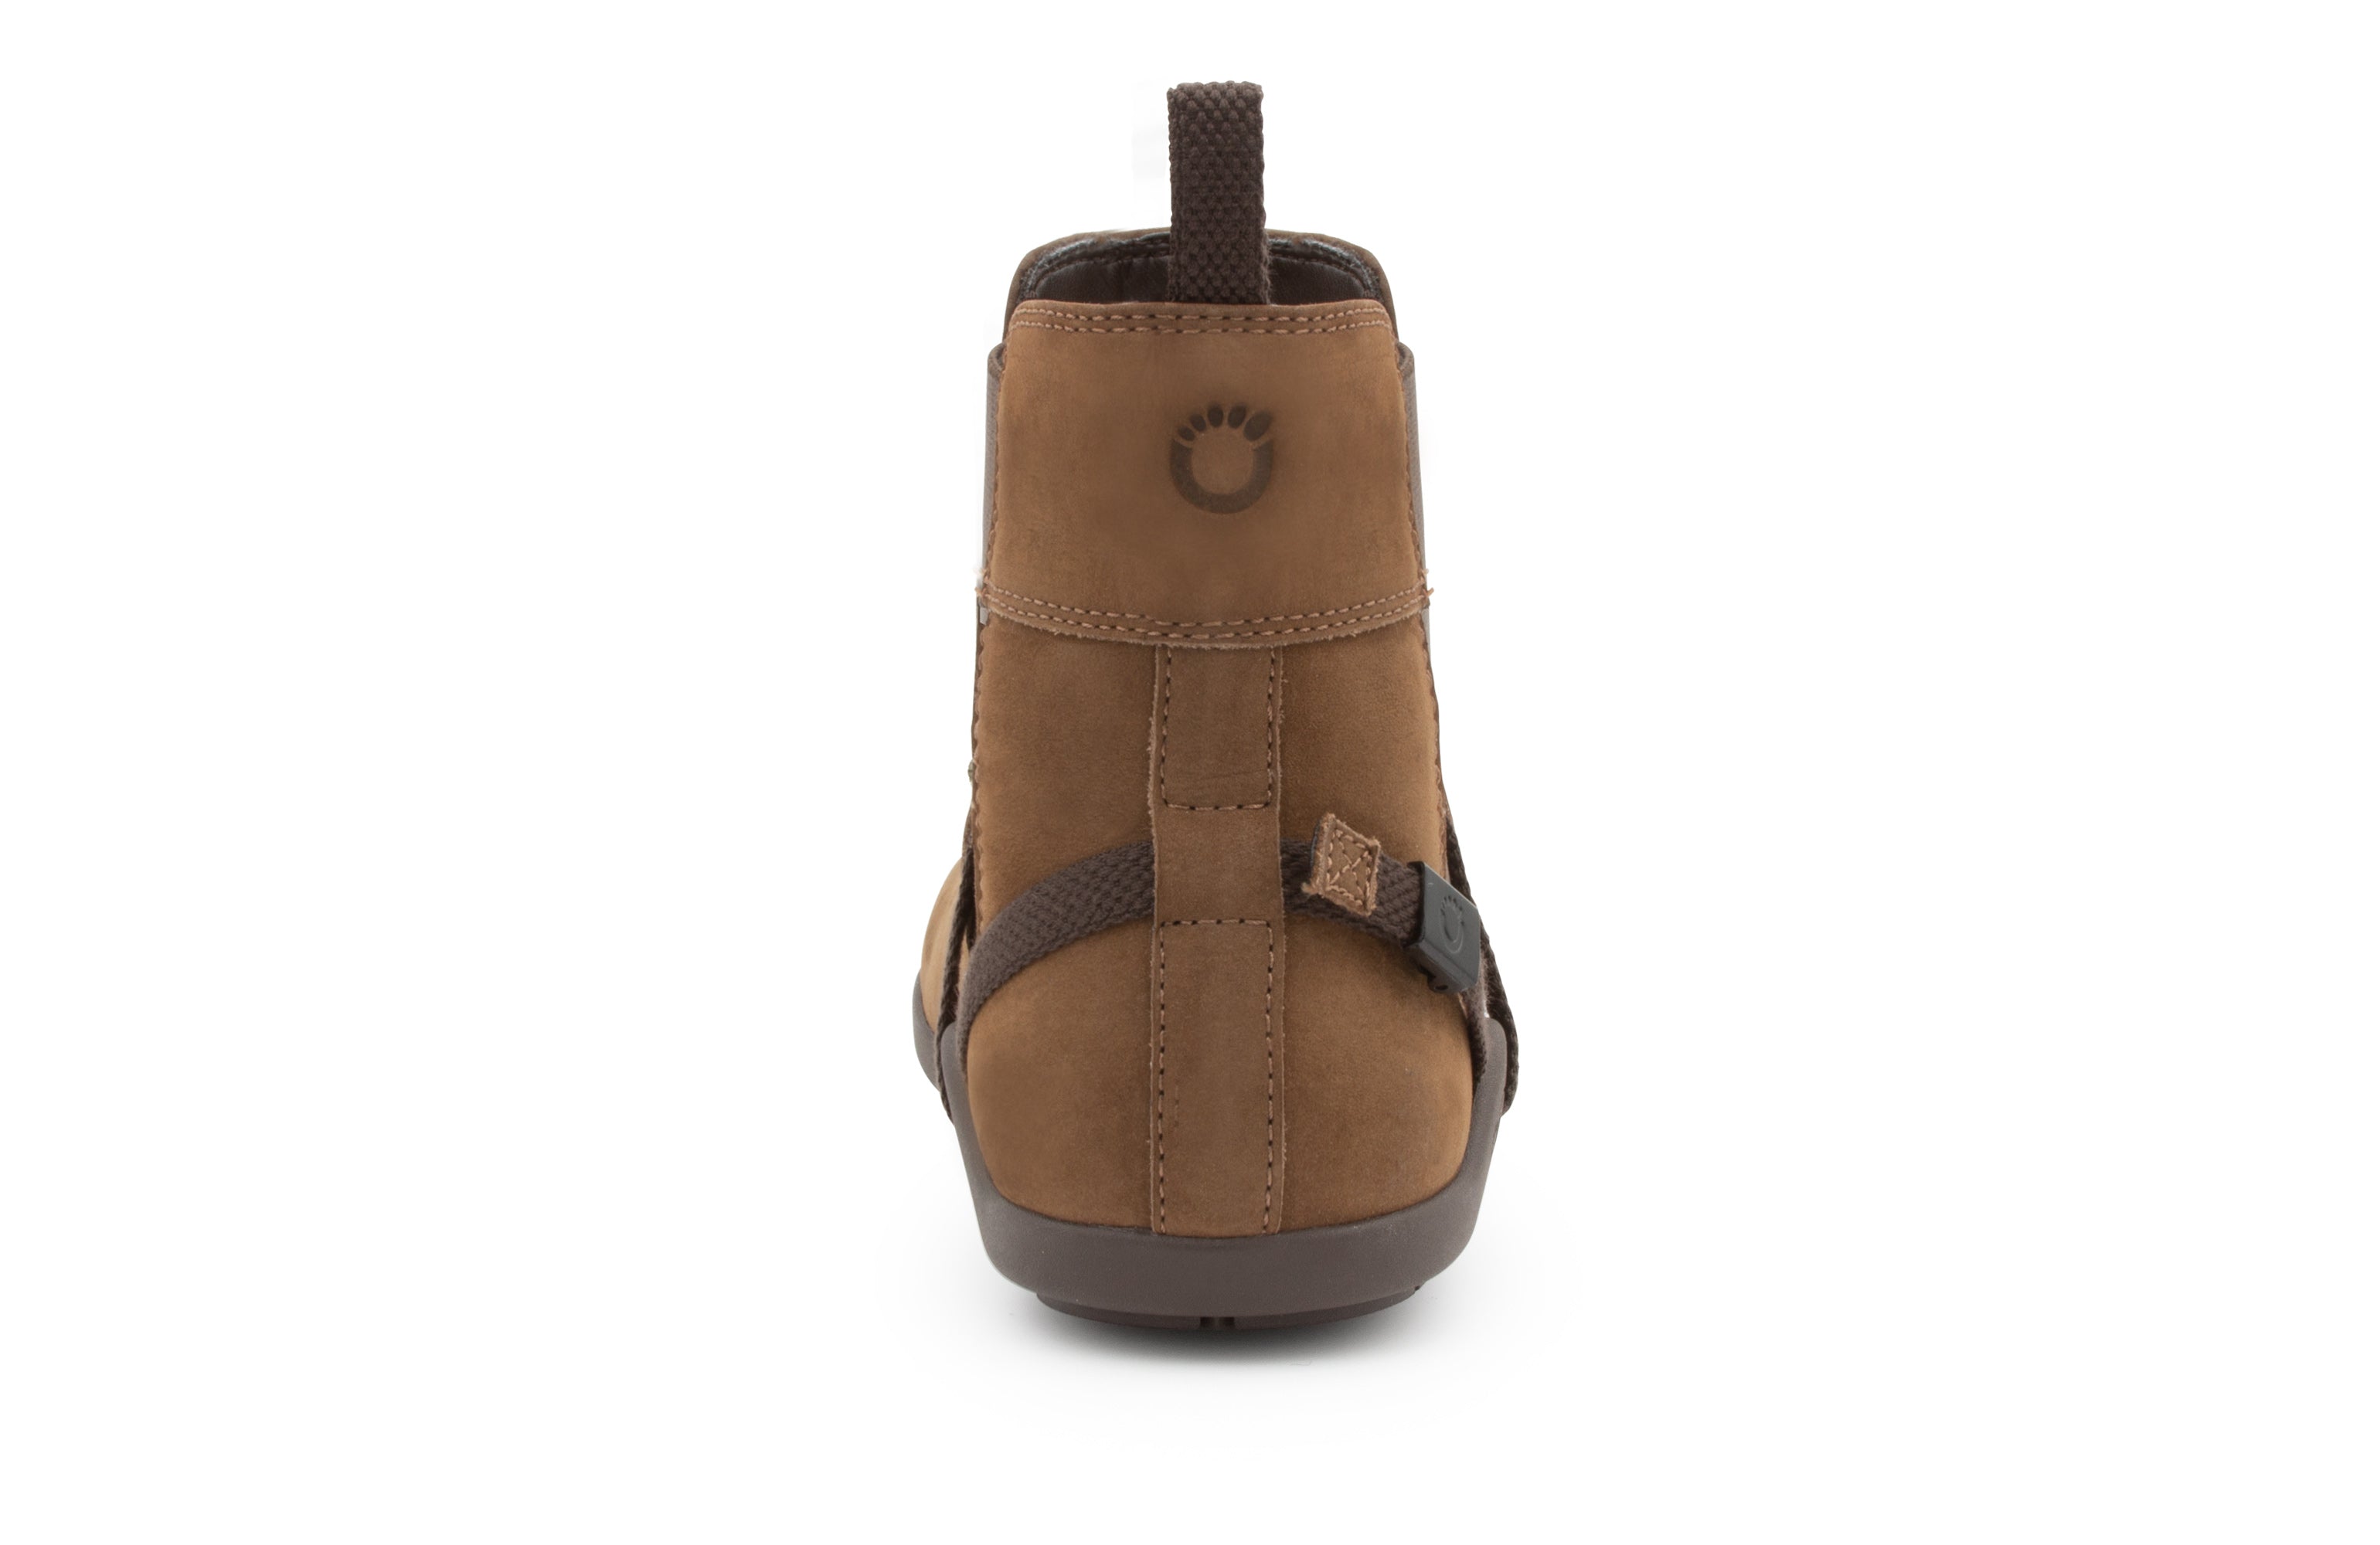 Xero Shoes Tari barfods chelsea vinterstøvler til kvinder i farven toffee, bagfra